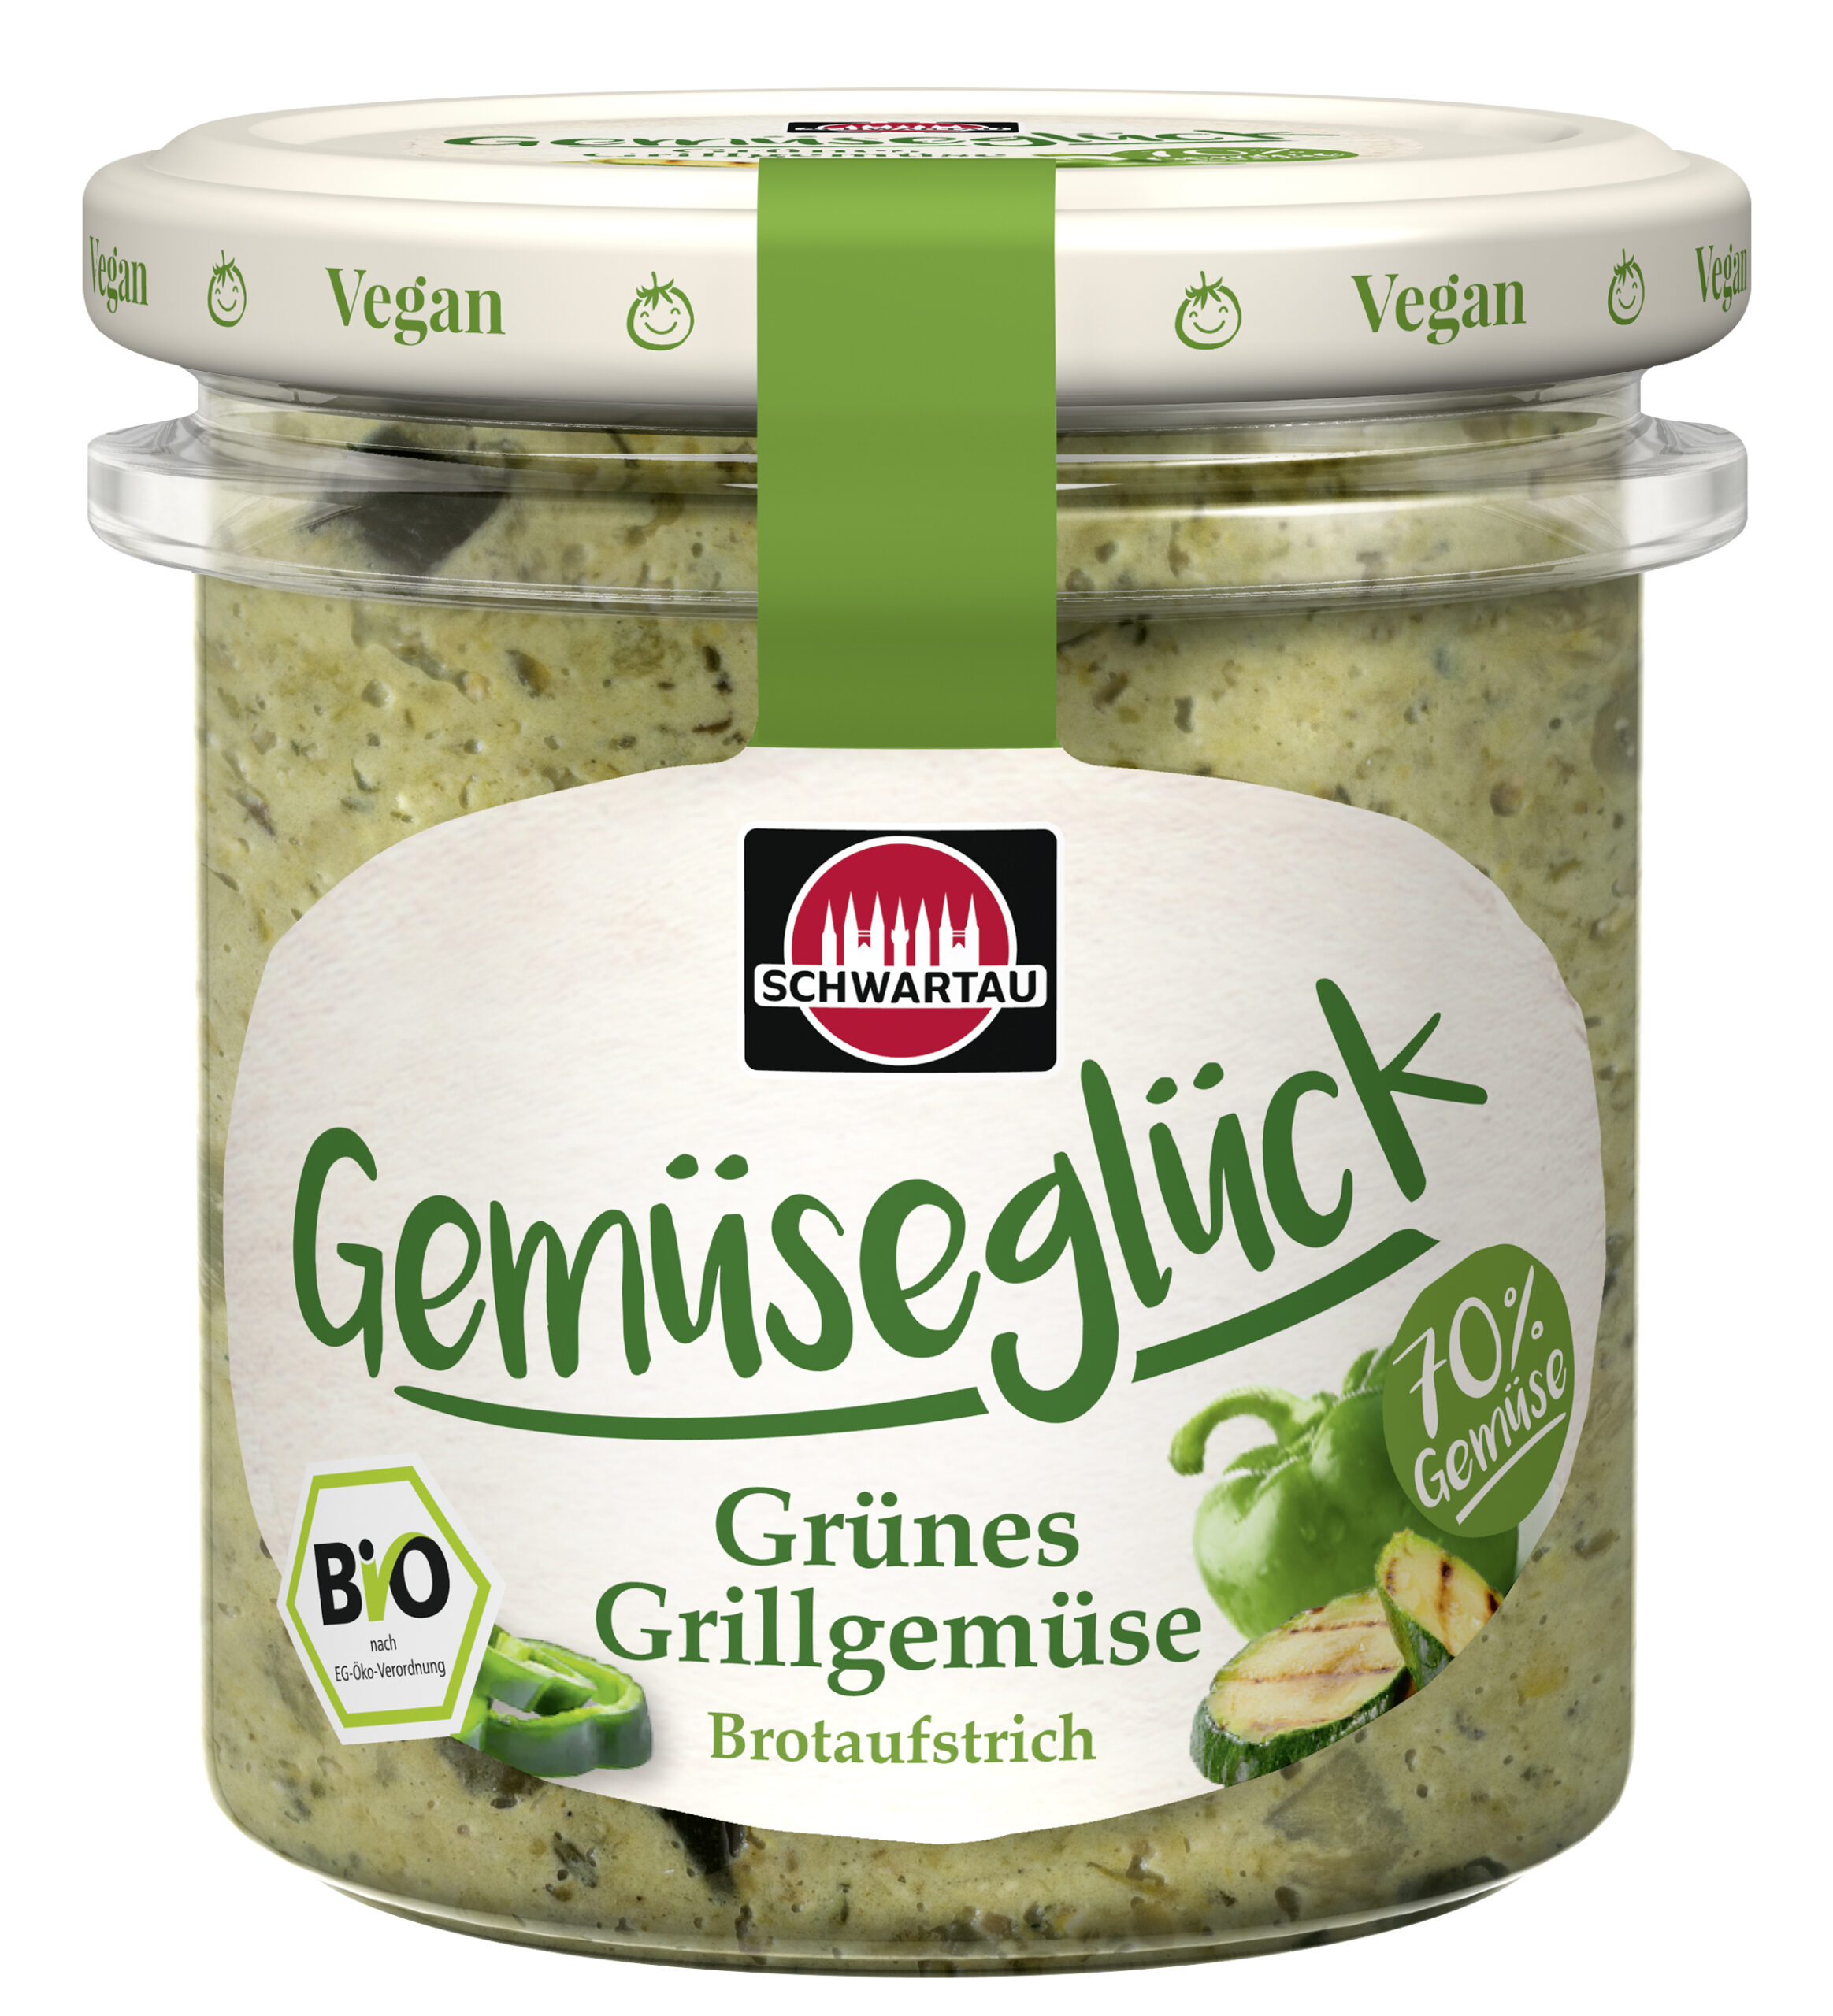 Schwartau Gemüseglück Brotaufstrich Grünes Grillgemüse 135g Glas